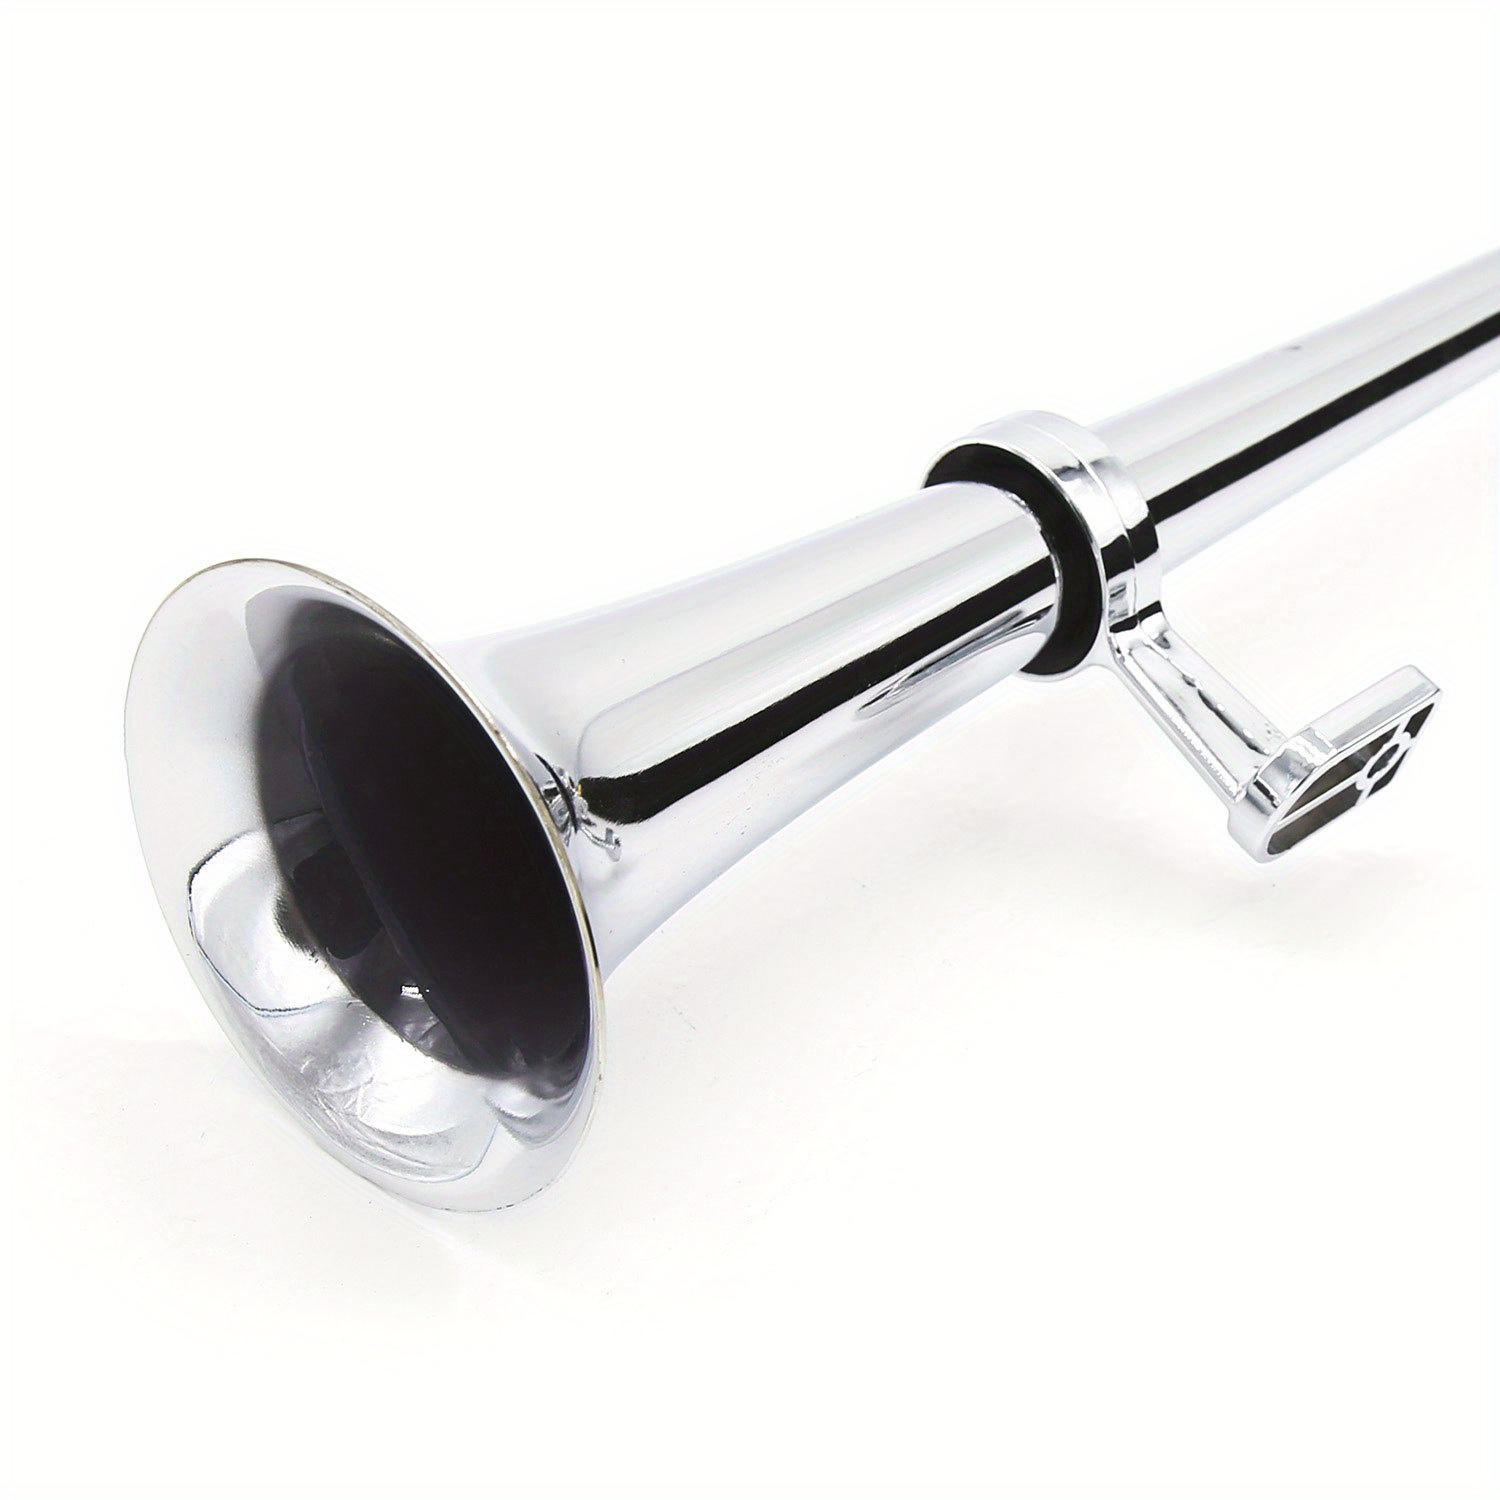 150db Super Loud Dual Trumpet Air Horn Kit 12v/24v - Temu